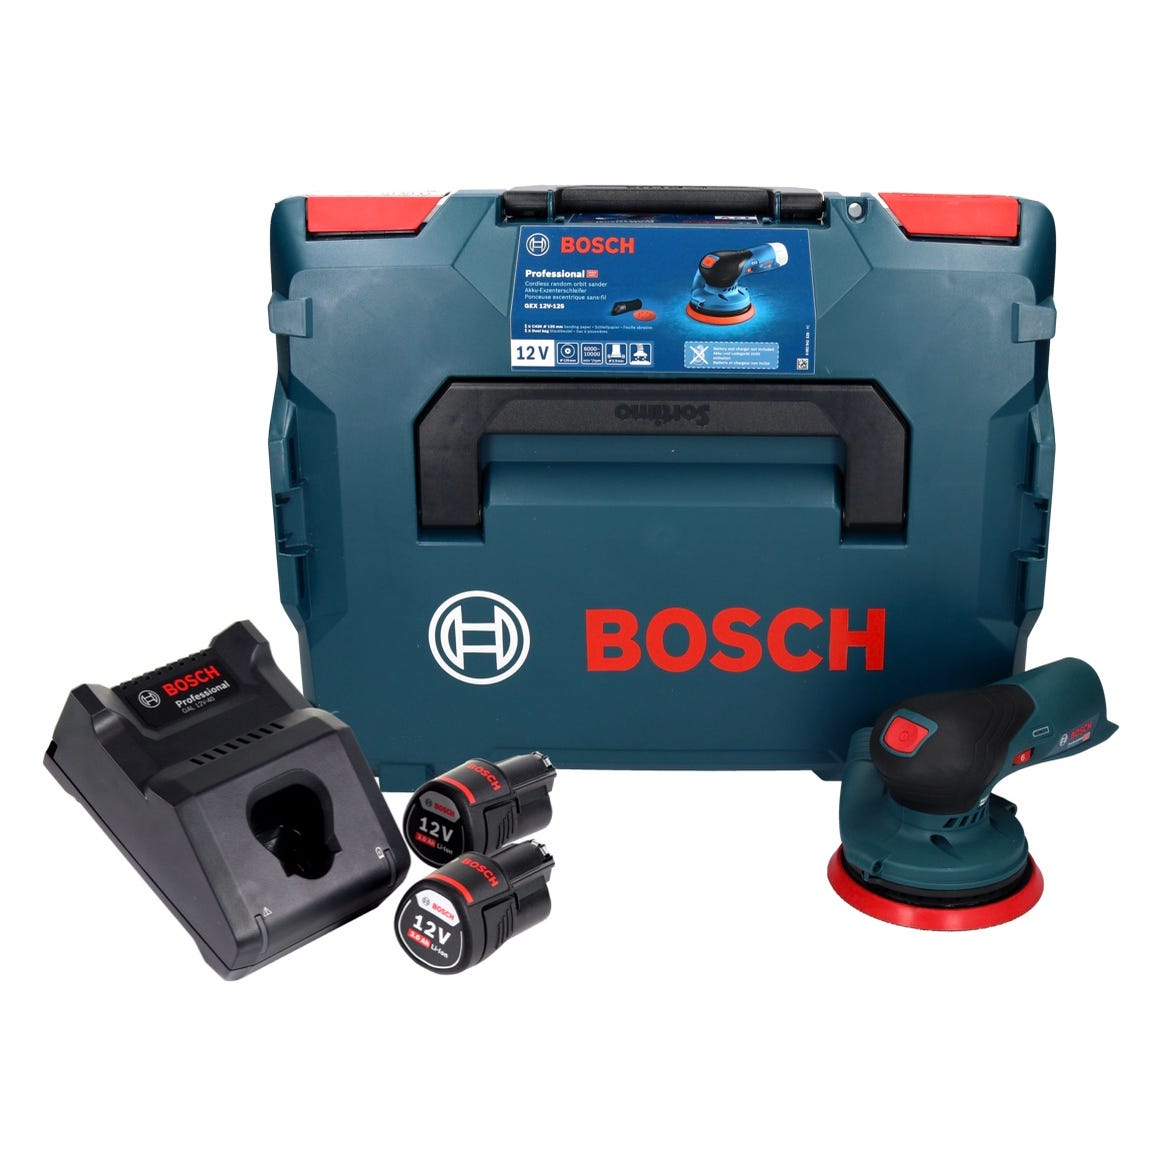 Ponceuse excentrique sans fil Bosch Professional GEX18V-125 18V (sans  batterie)